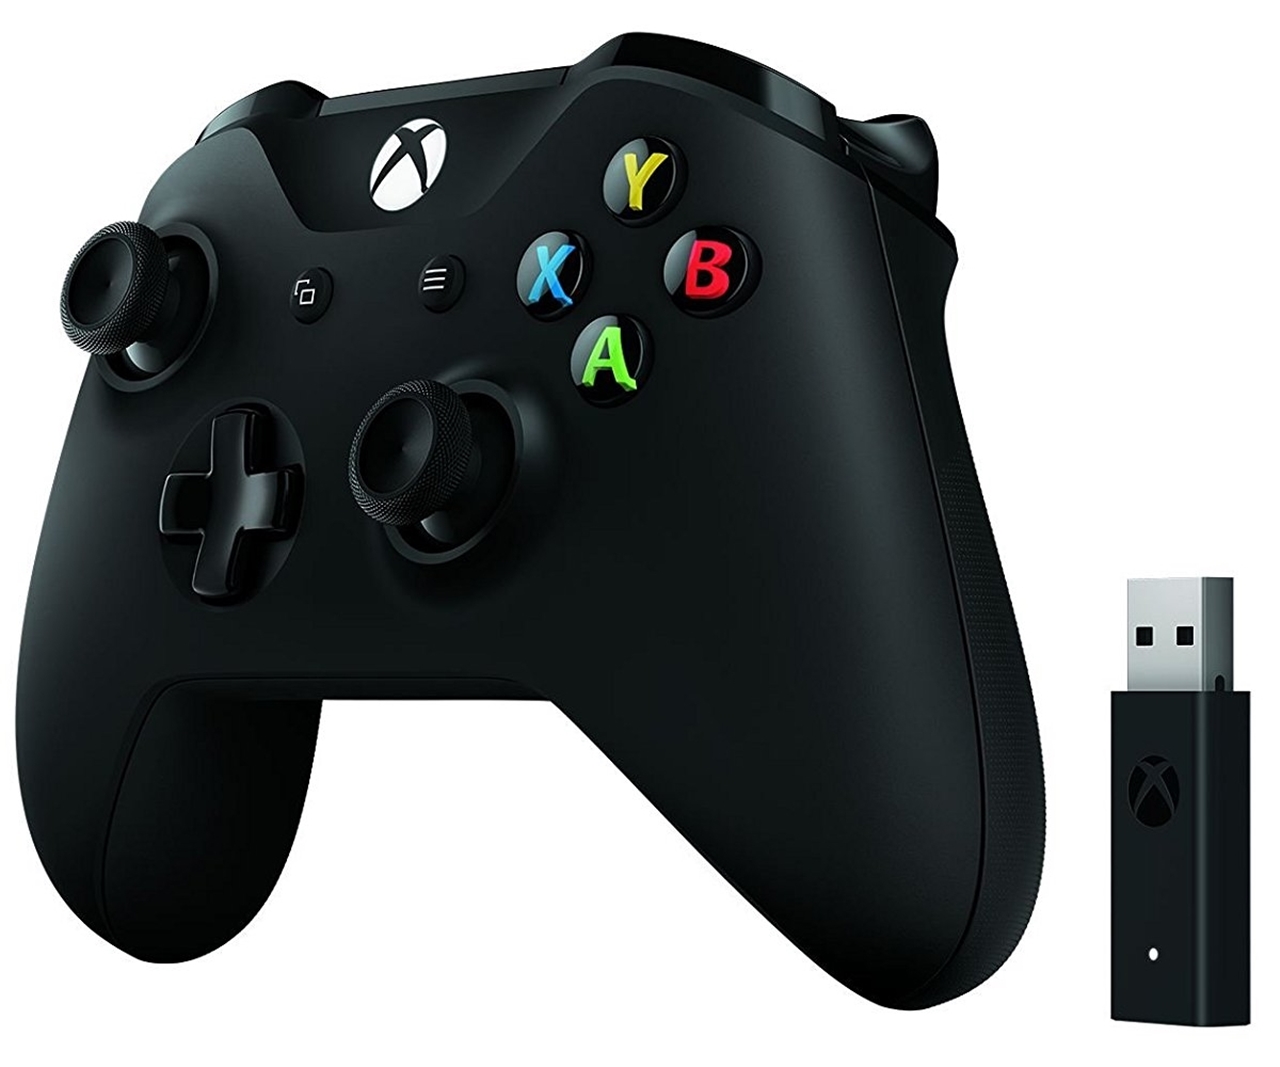 Xbox コントローラー Wireless Adapter For Windows 10 4n7 ゲームパッド コントローラ ゲーミングデバイス ゲーミング Pcパーツと自作パソコン 組み立てパソコンの専門店 1 S Pcワンズ